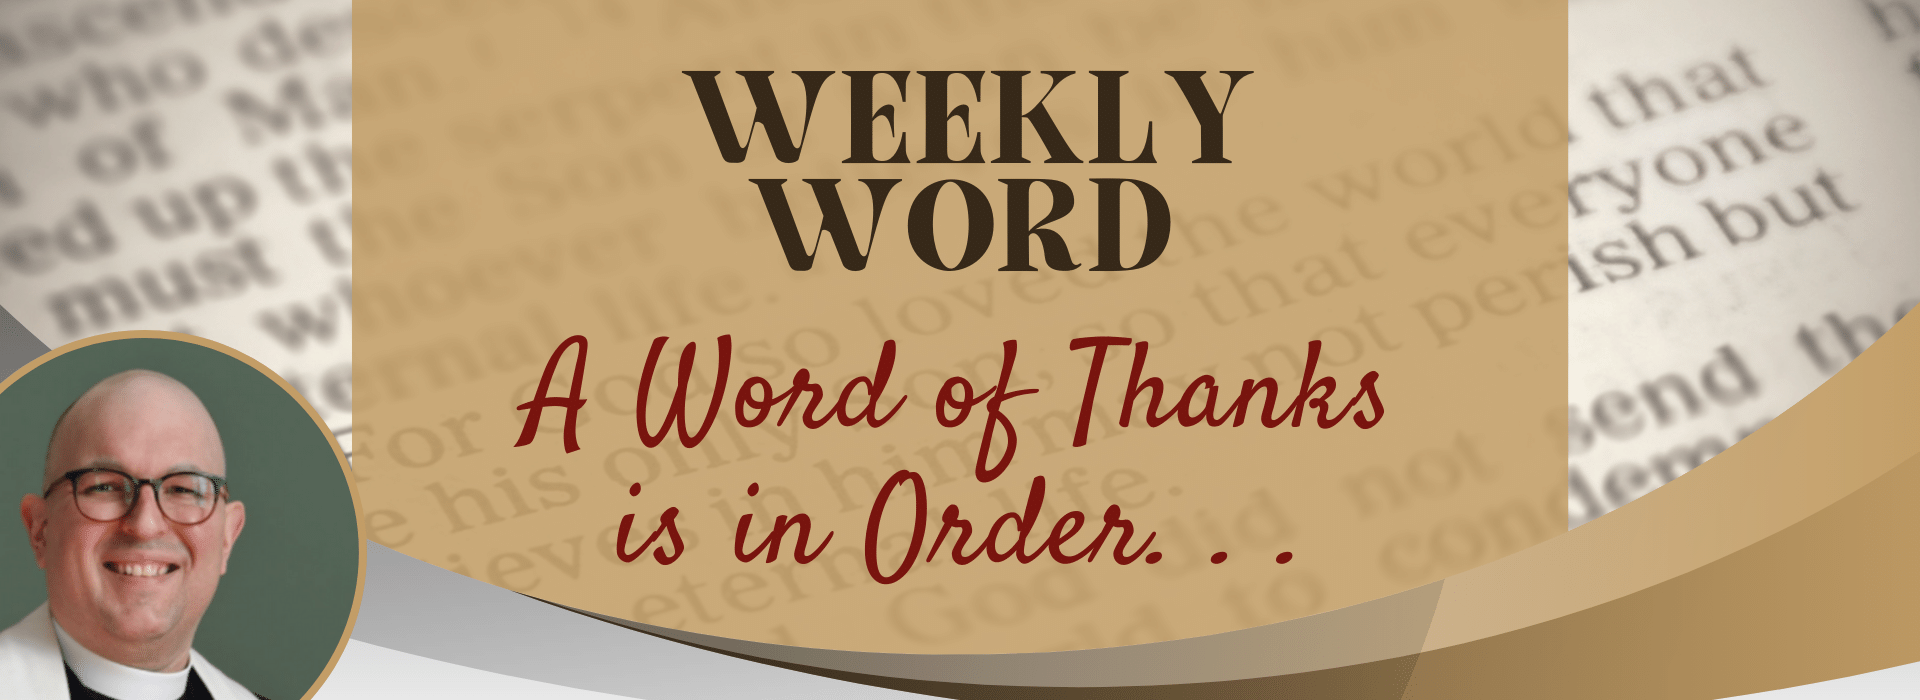 Weekly Word May 24